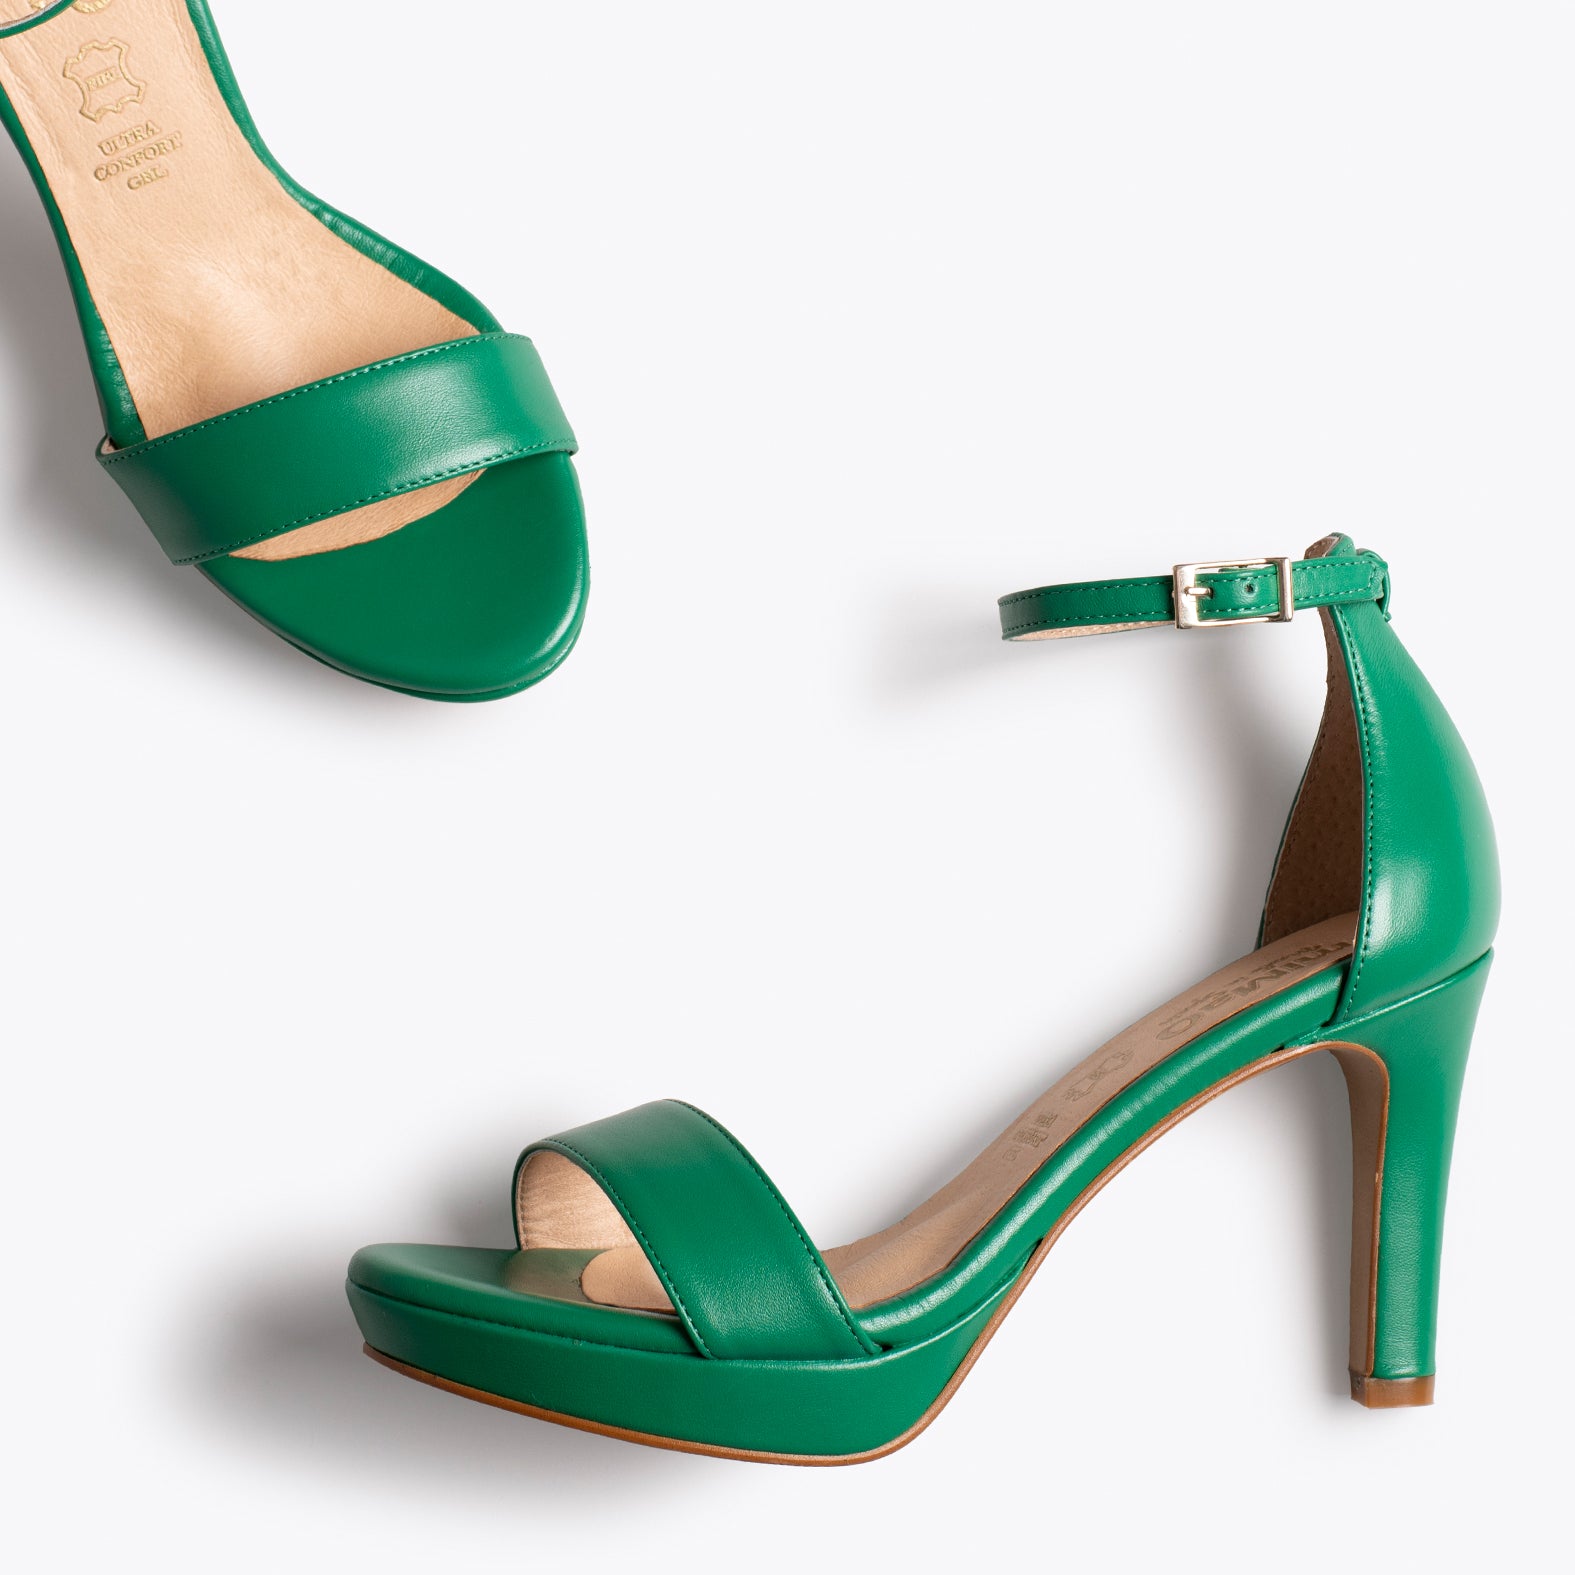 PARTY – GREEN elegant sandal with platform